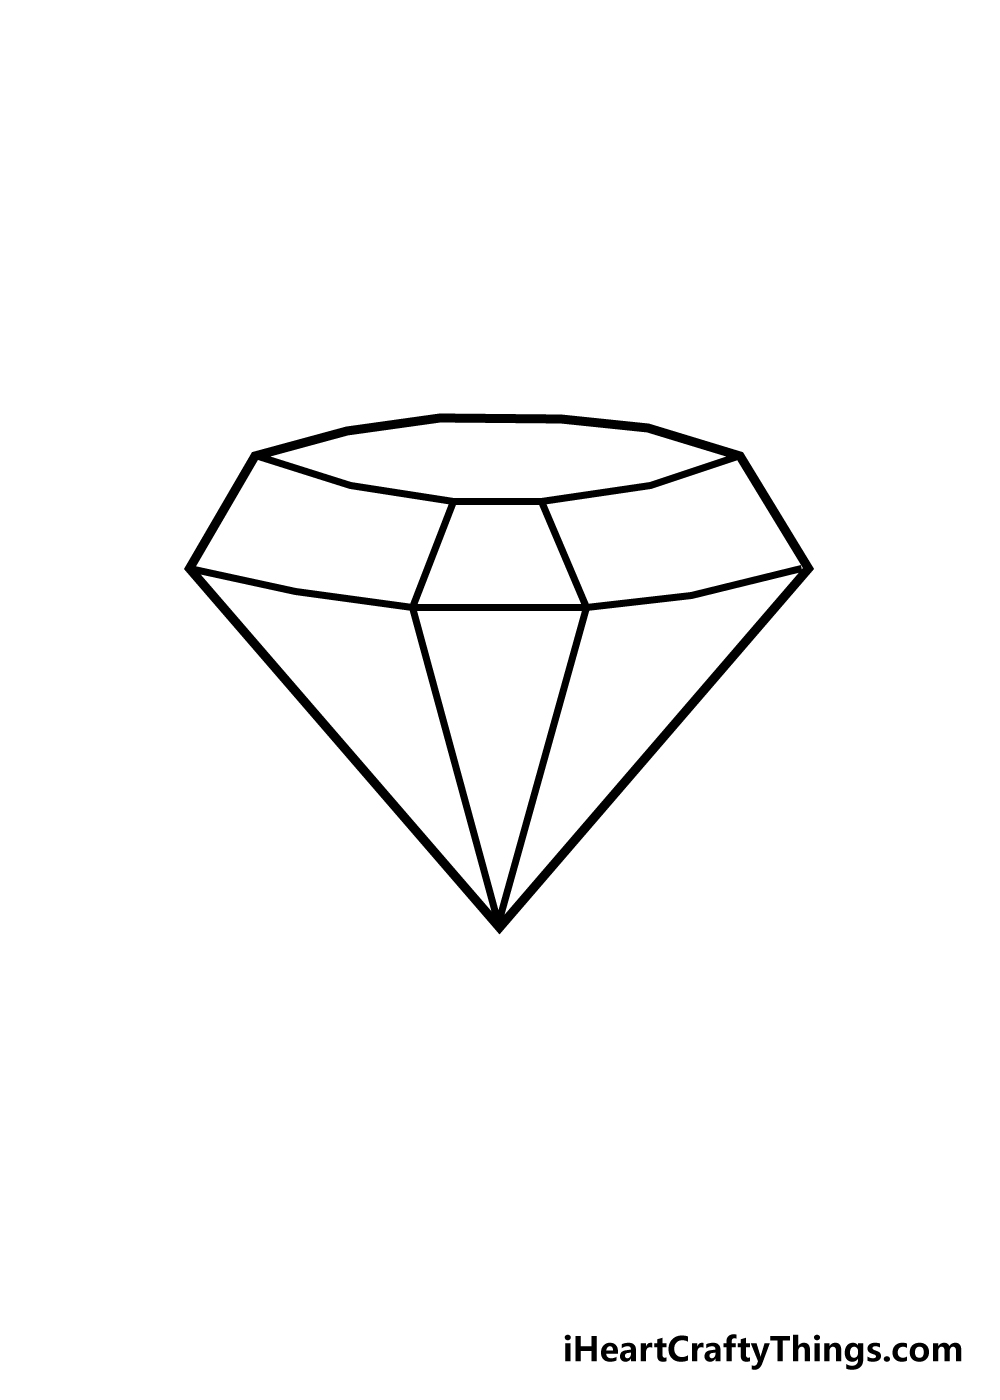 draw diamond step 4